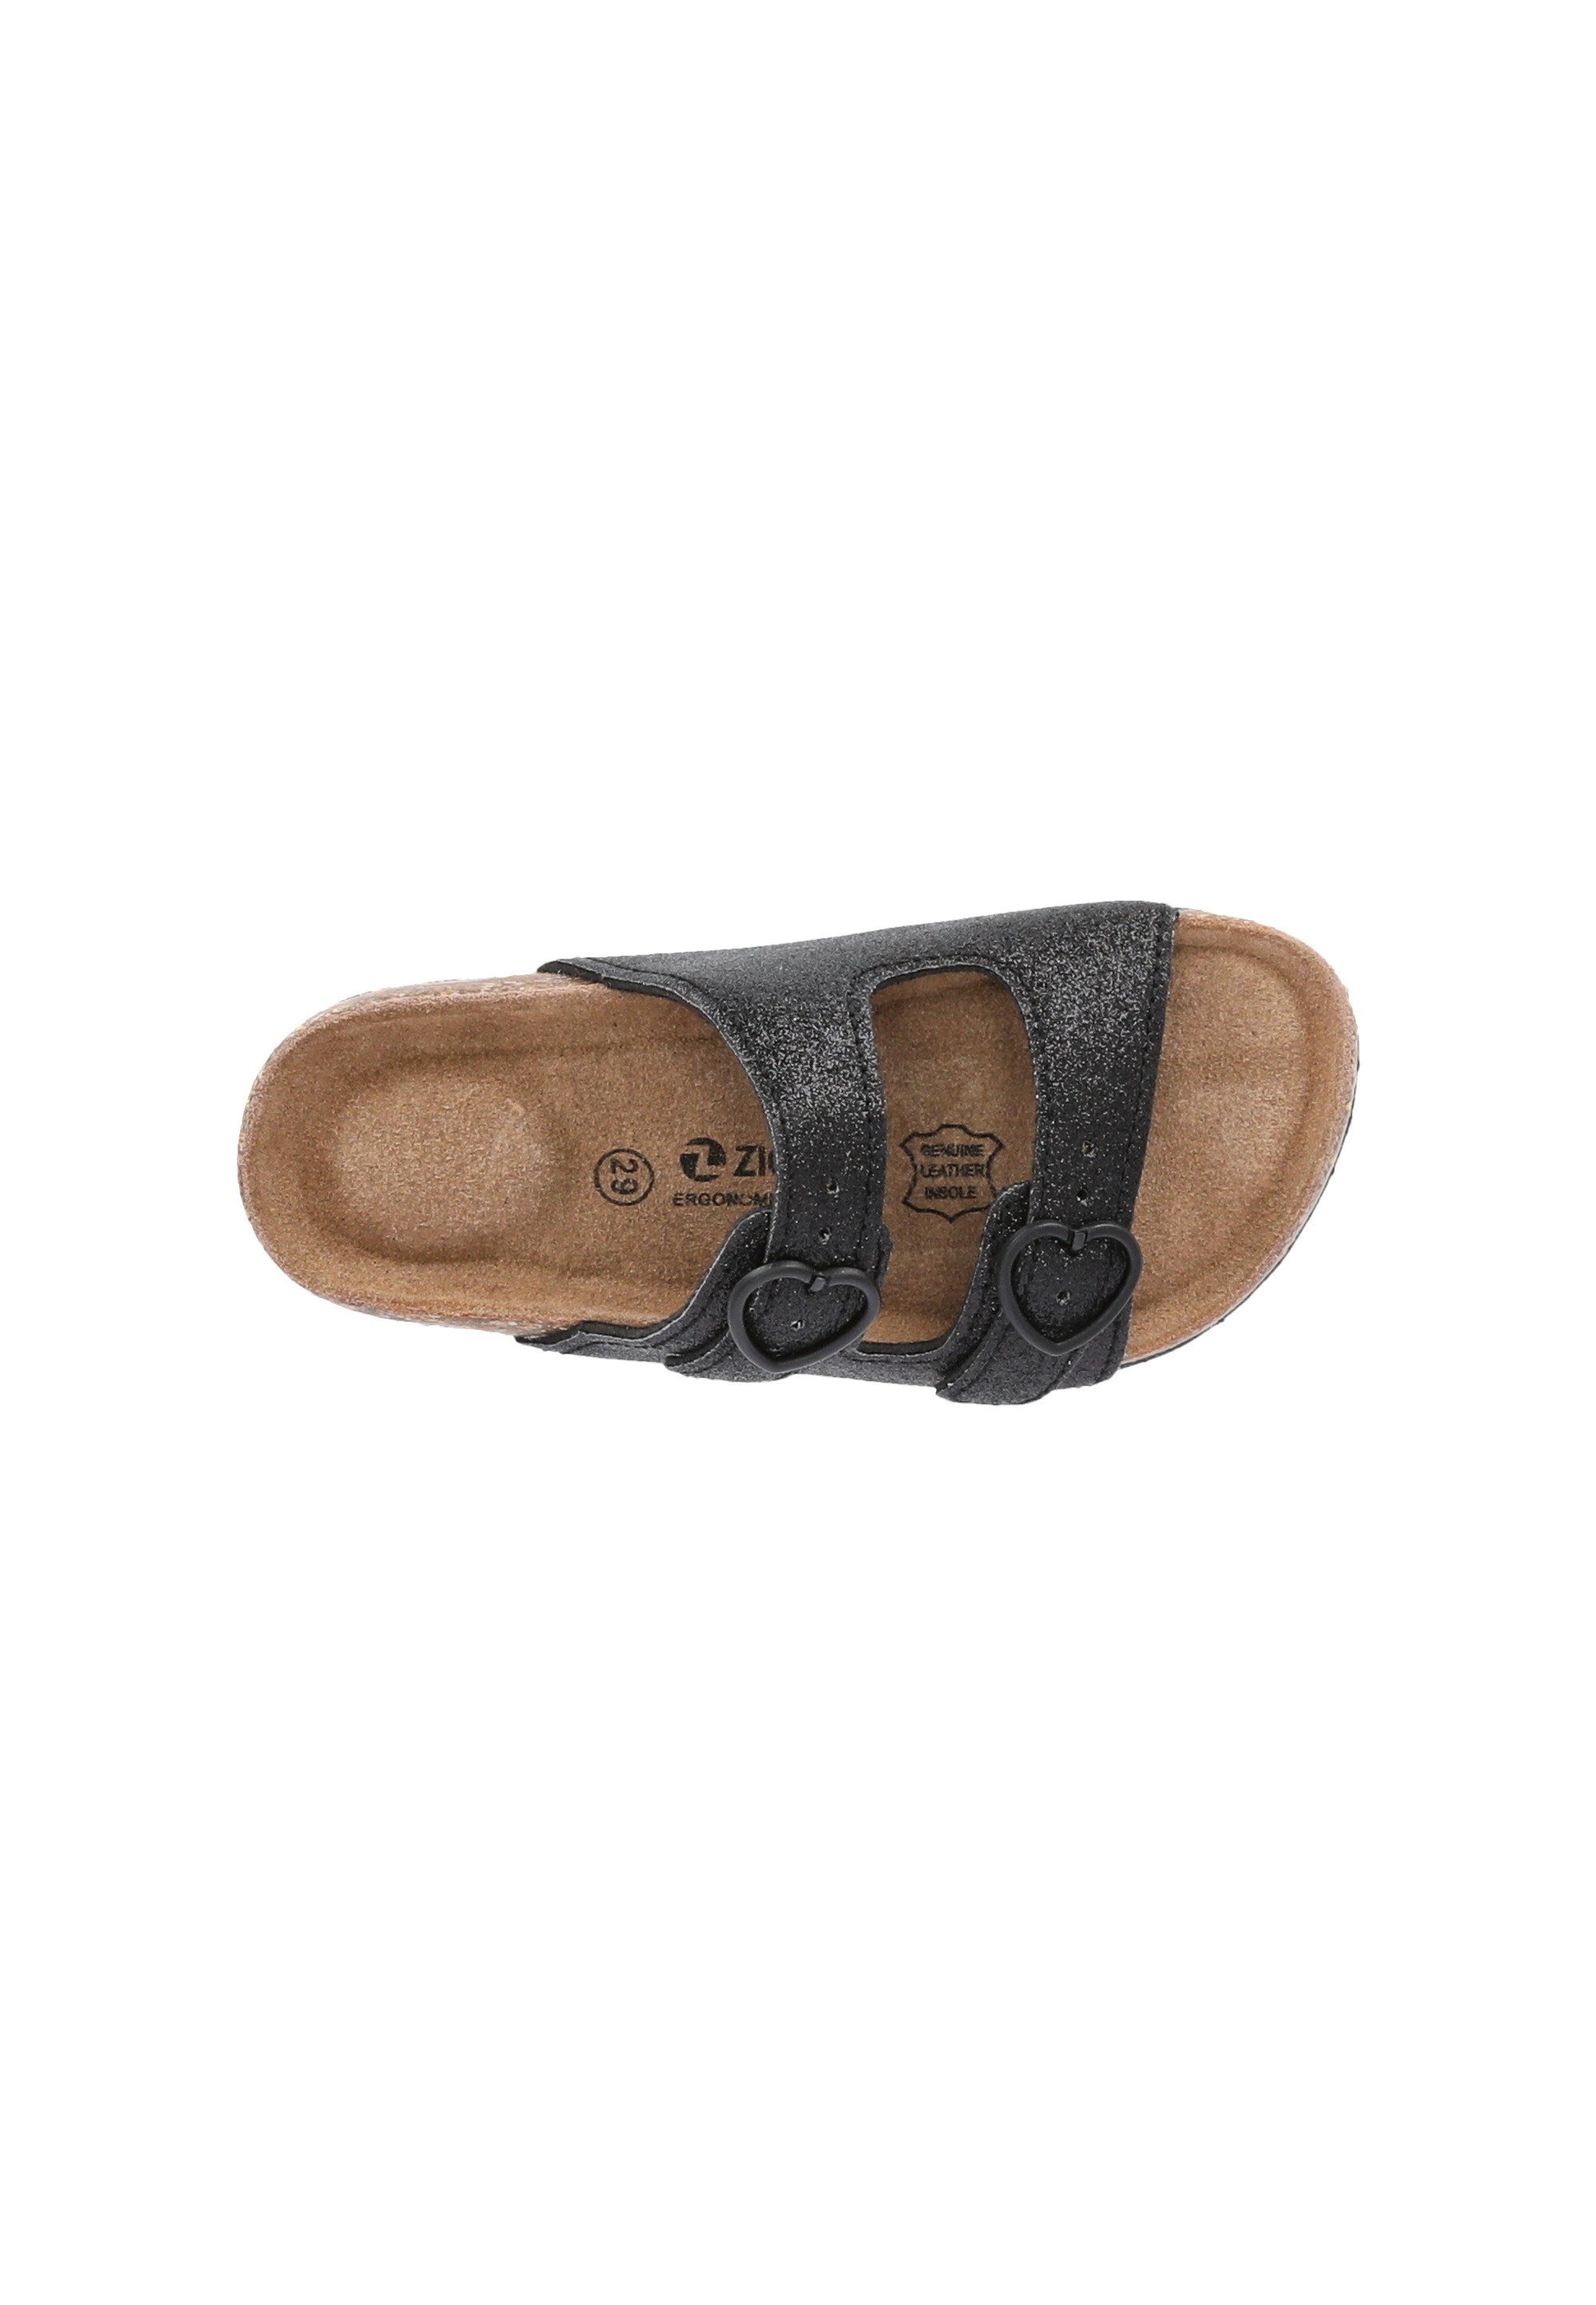 Sandale ZIGZAG Messina aus schwarz Naturmaterialien hochwertigen